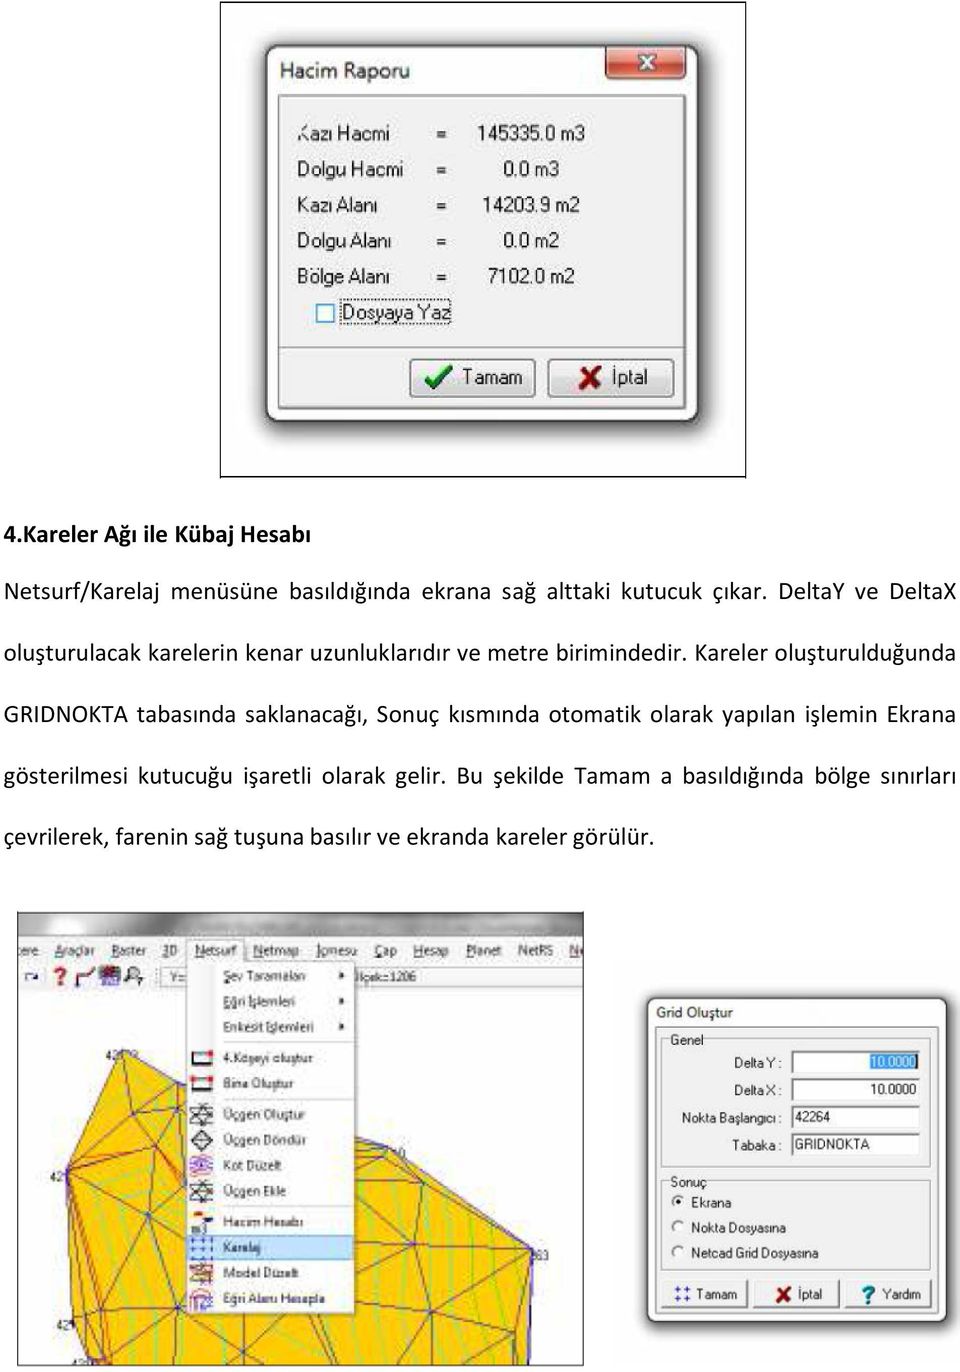 Kareler oluşturulduğunda GRIDNOKTA tabasında saklanacağı, Sonuç kısmında otomatik olarak yapılan işlemin Ekrana